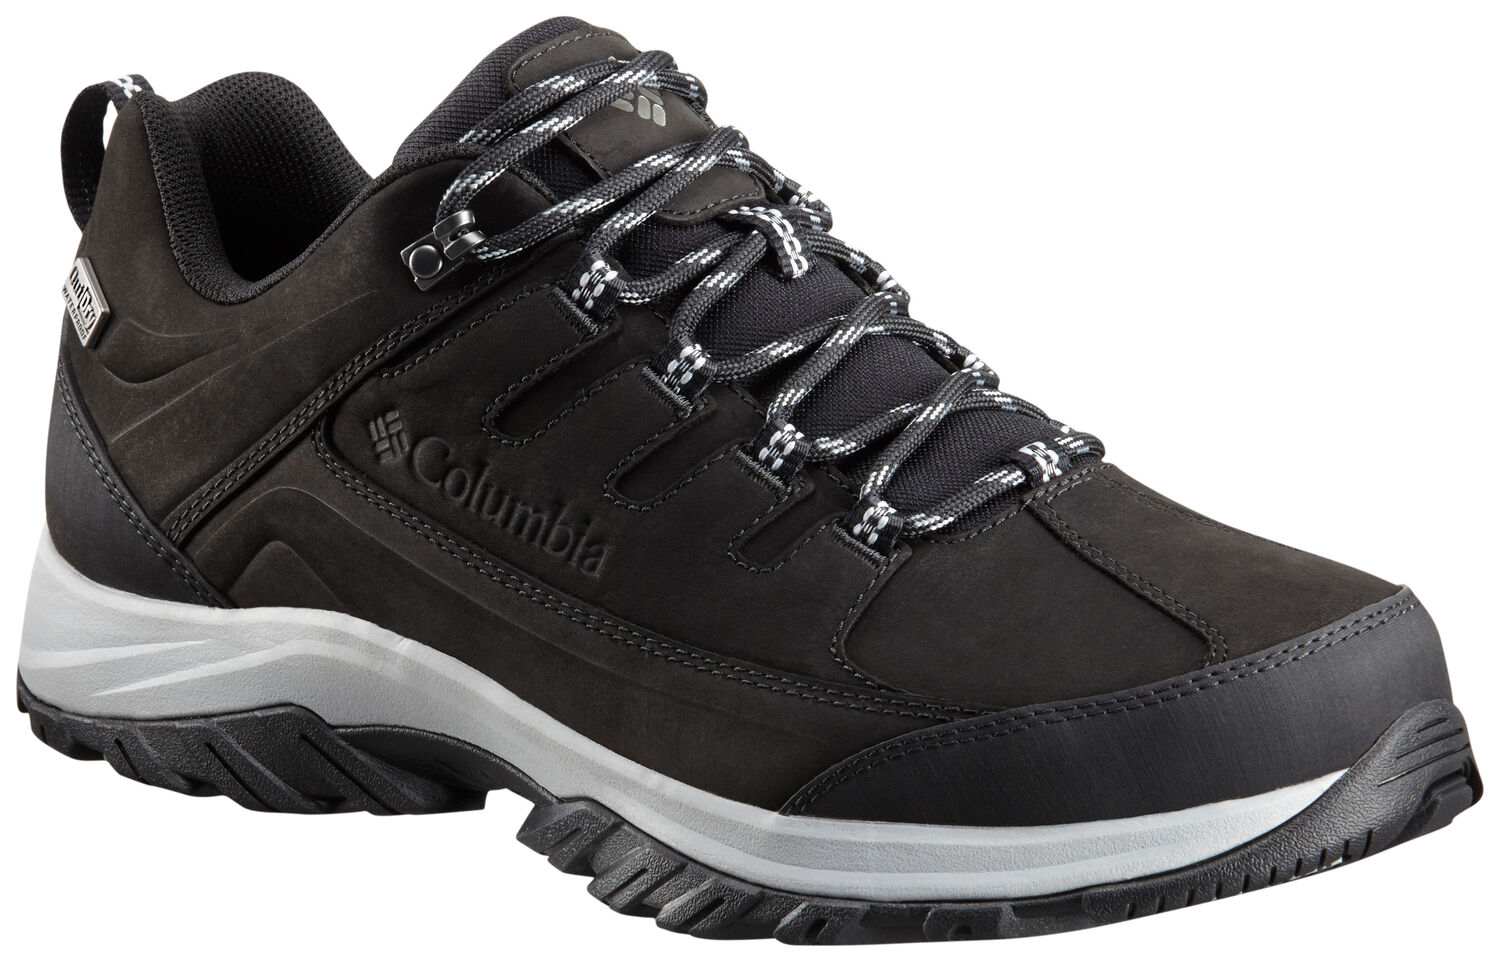 Columbia - Terrebonne II Outdry - Walking Boots - Men's